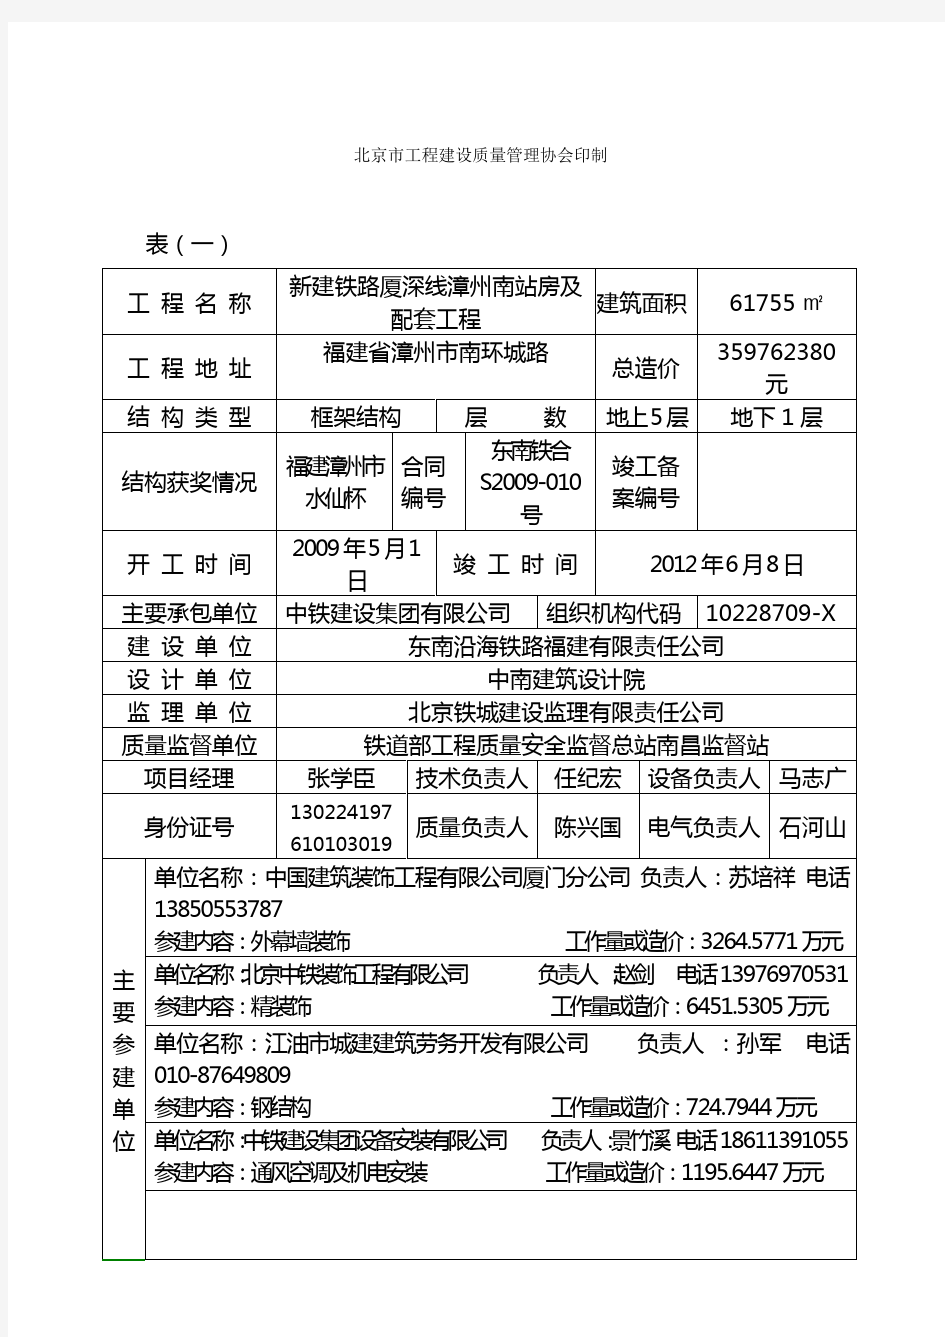 北京市建筑长城杯工程申报表(正式)